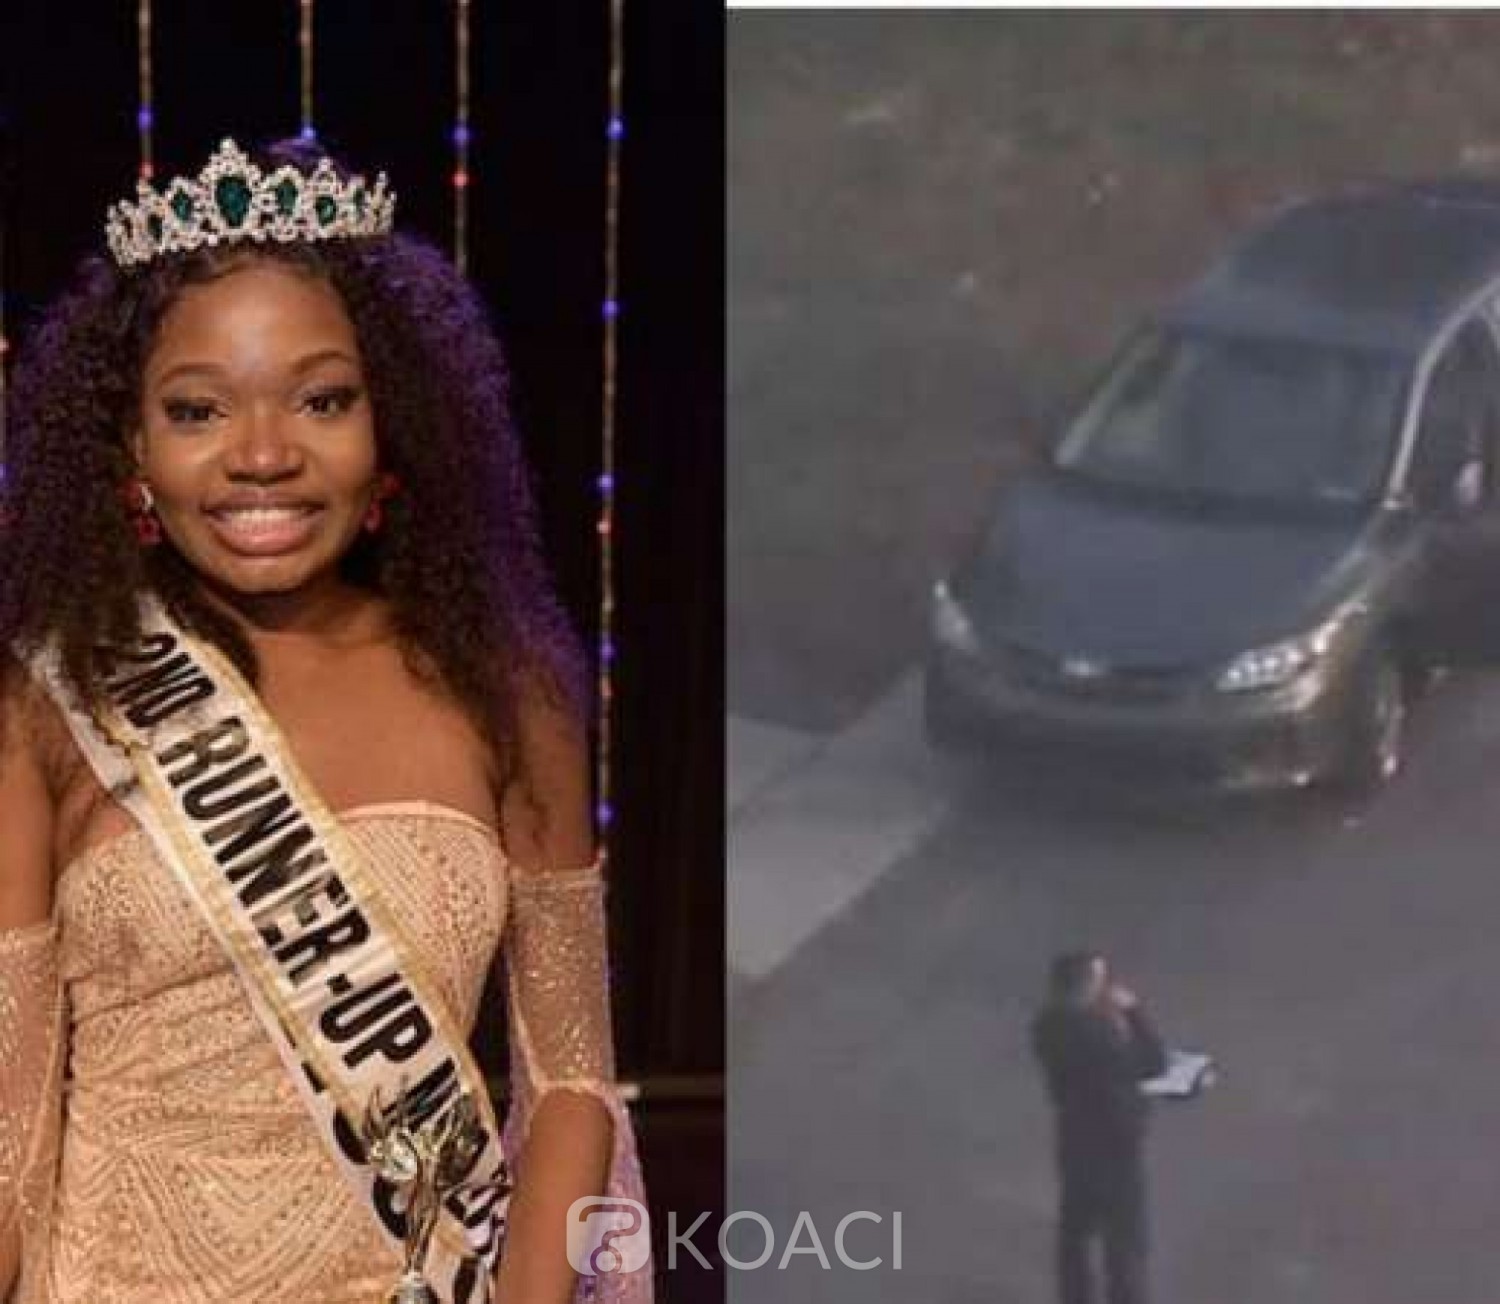 Nigeria : Une ancienne reine de beauté assassinée dans sa voiture aux USA